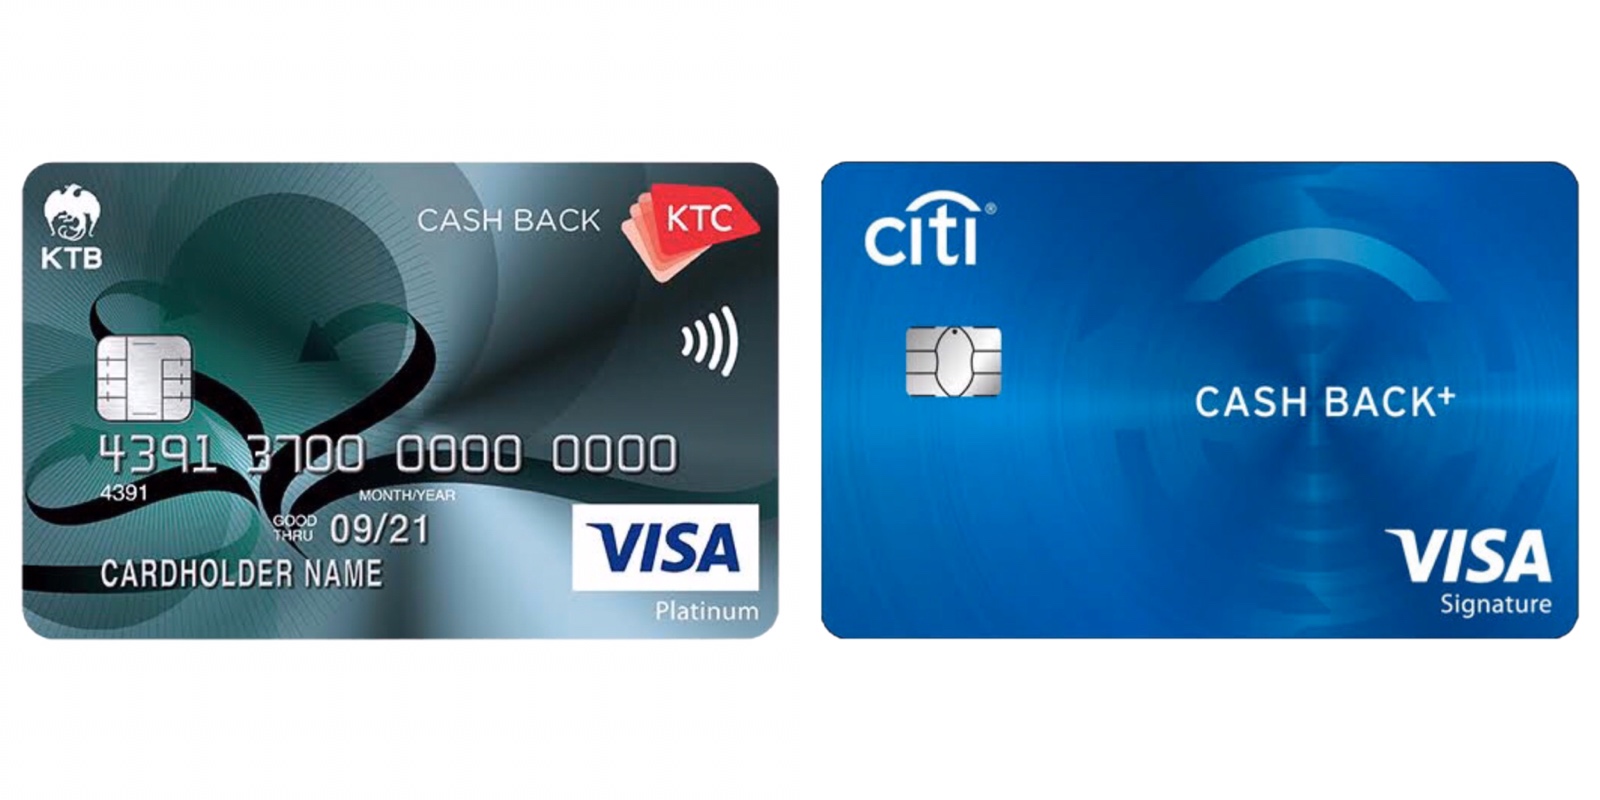 เข้ามาช่วยเลือก,ช่วยโหวด,แสดงความคิดเห็น,รีวิว,เปรียบเทียบ บัตรเครดิตแบบ Cashback ของ Ktc กับ Citi Bank หน่อยครับ!! - Pantip